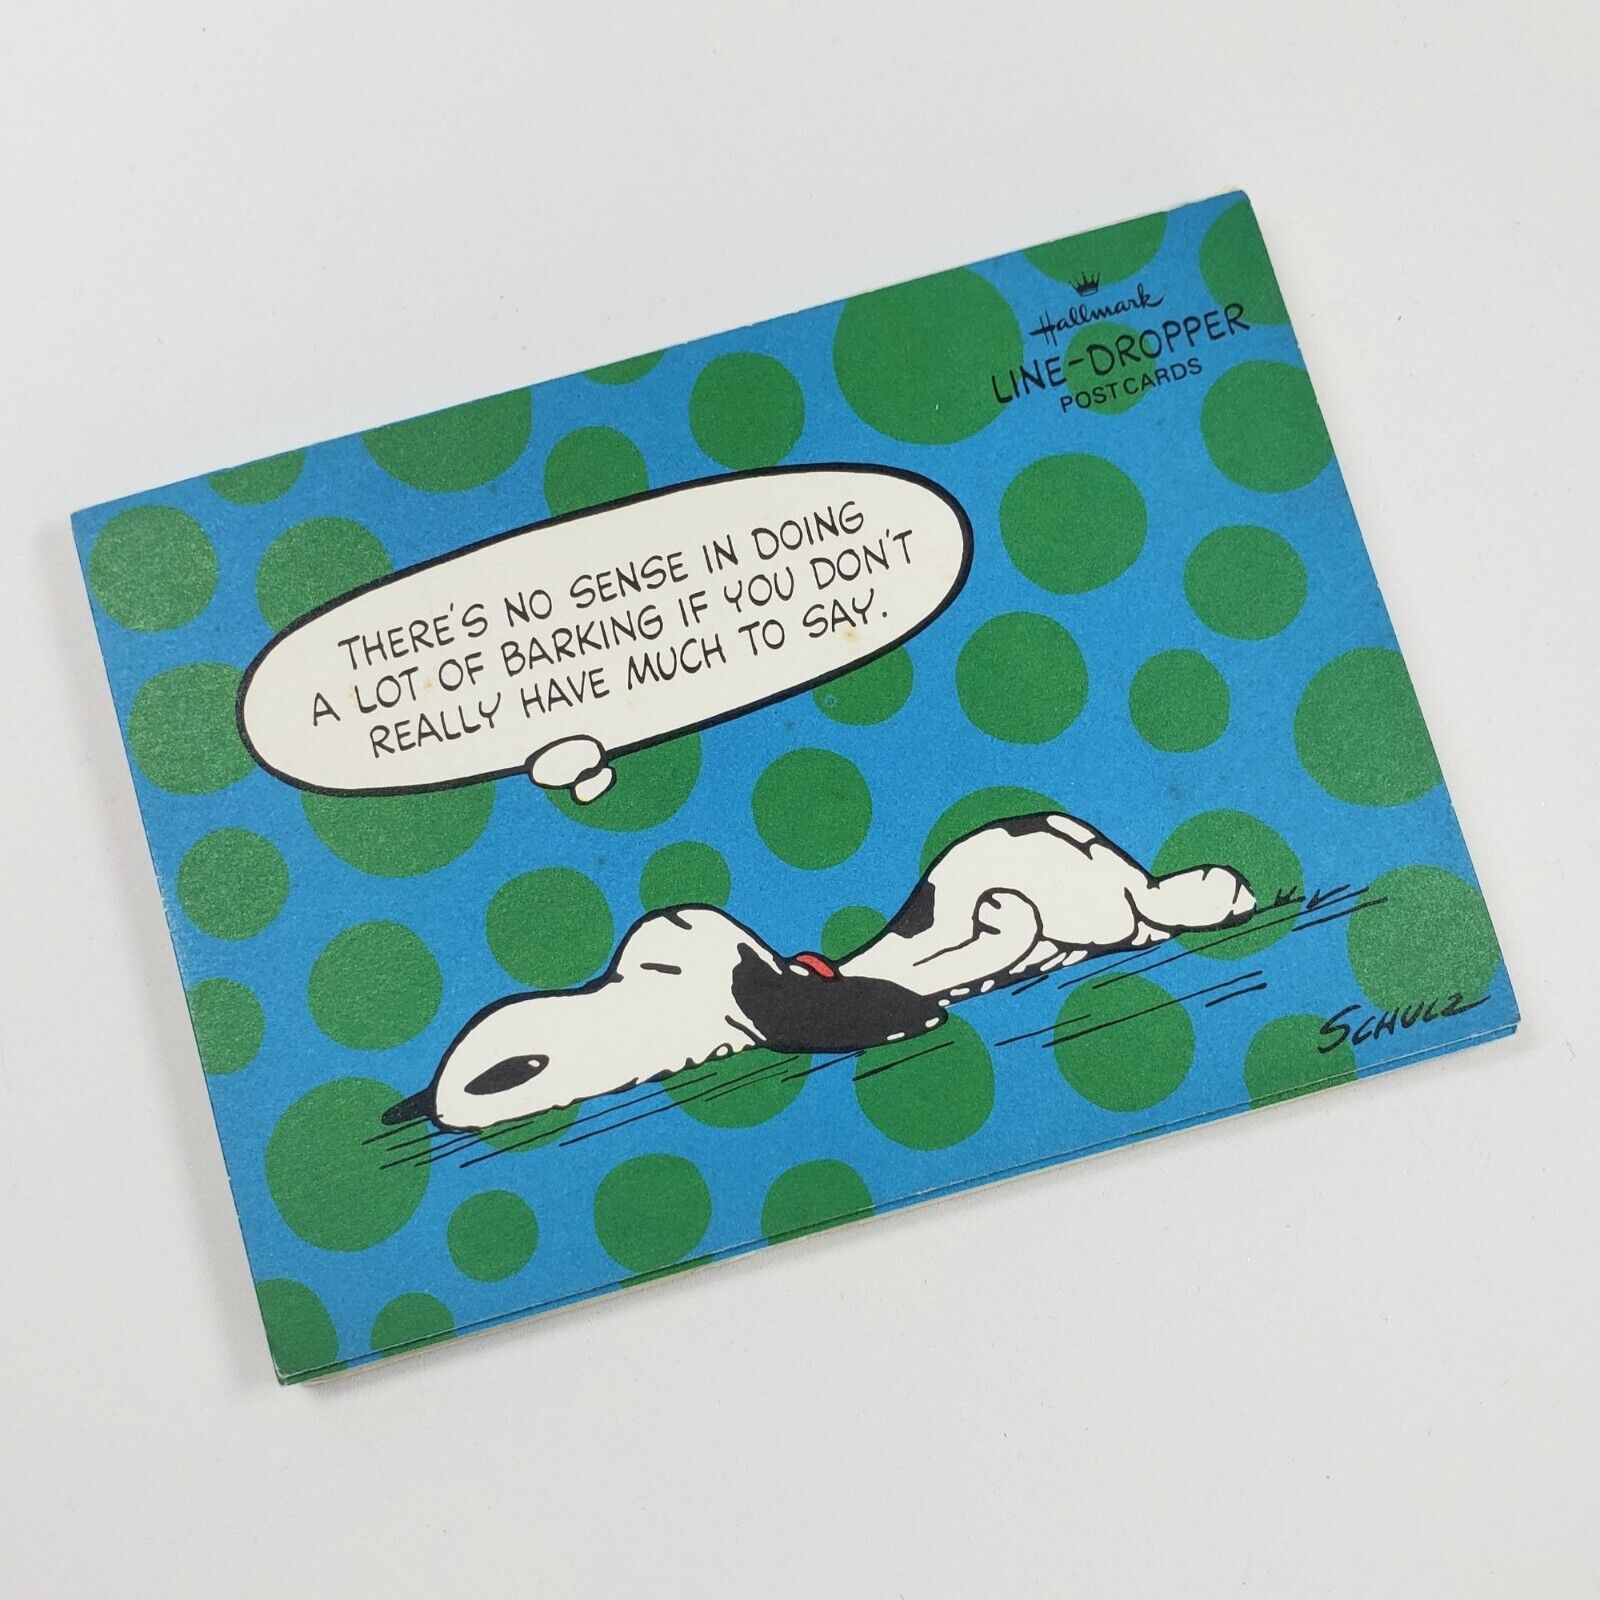 Vintage Snoopy Peanuts Post Card Booklet Hallmark Line -Dropper Unused